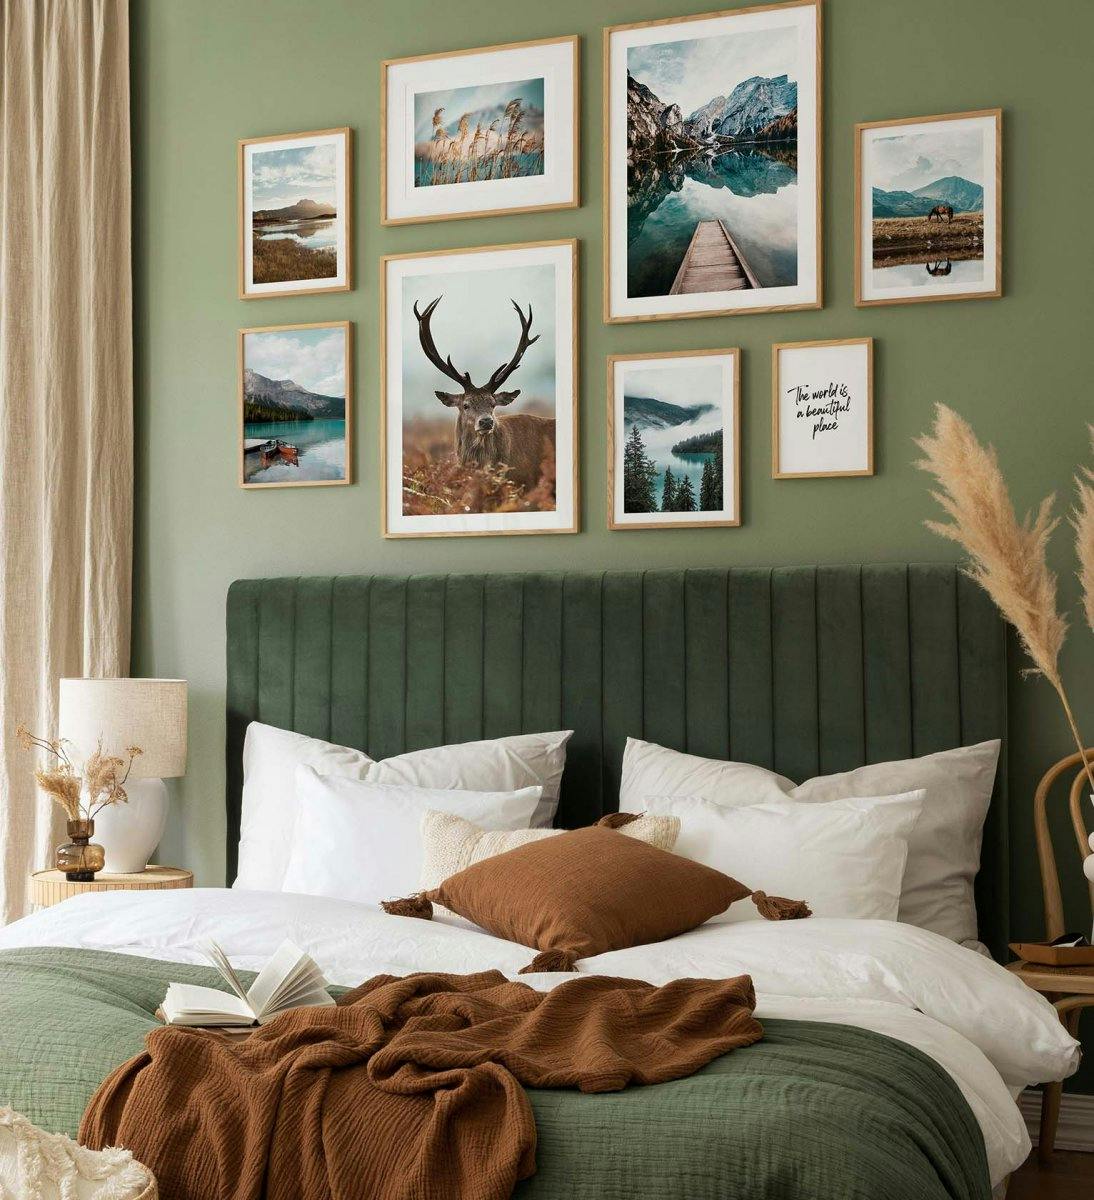 جدار معرض الحيوانات والطبيعة بألوان خضراء مع إطارات من خشب البلوط لغرفة النوم